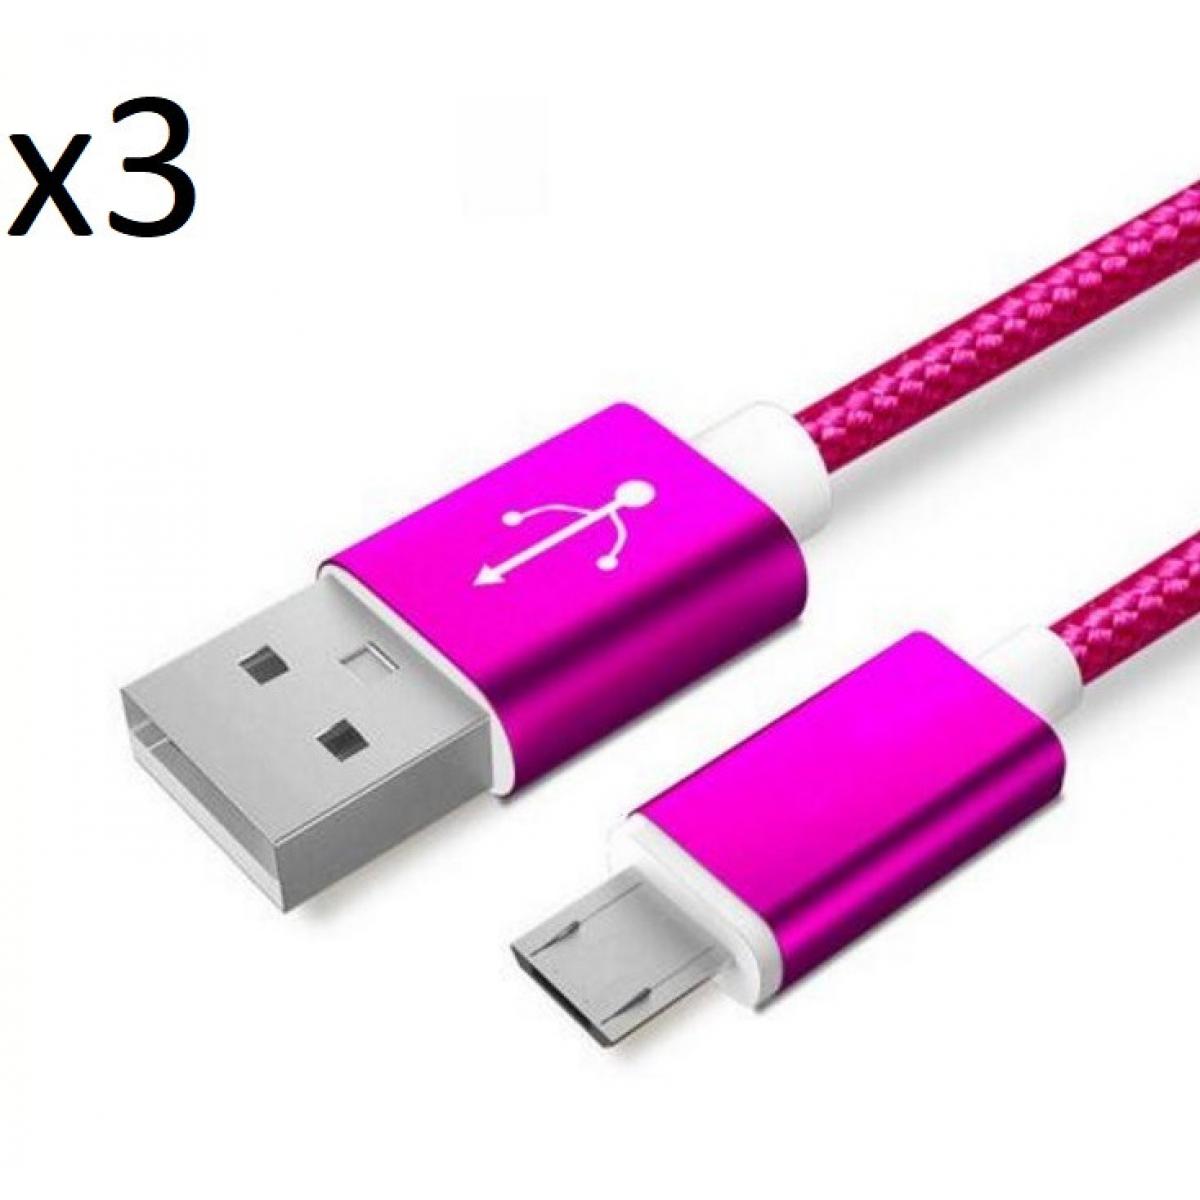 Shot - Pack de 3 Cables Metal Nylon Micro USB pour "XIAOMI Redmi 9C" Smartphone Android Chargeur (ROSE BONBON) - Chargeur secteur téléphone